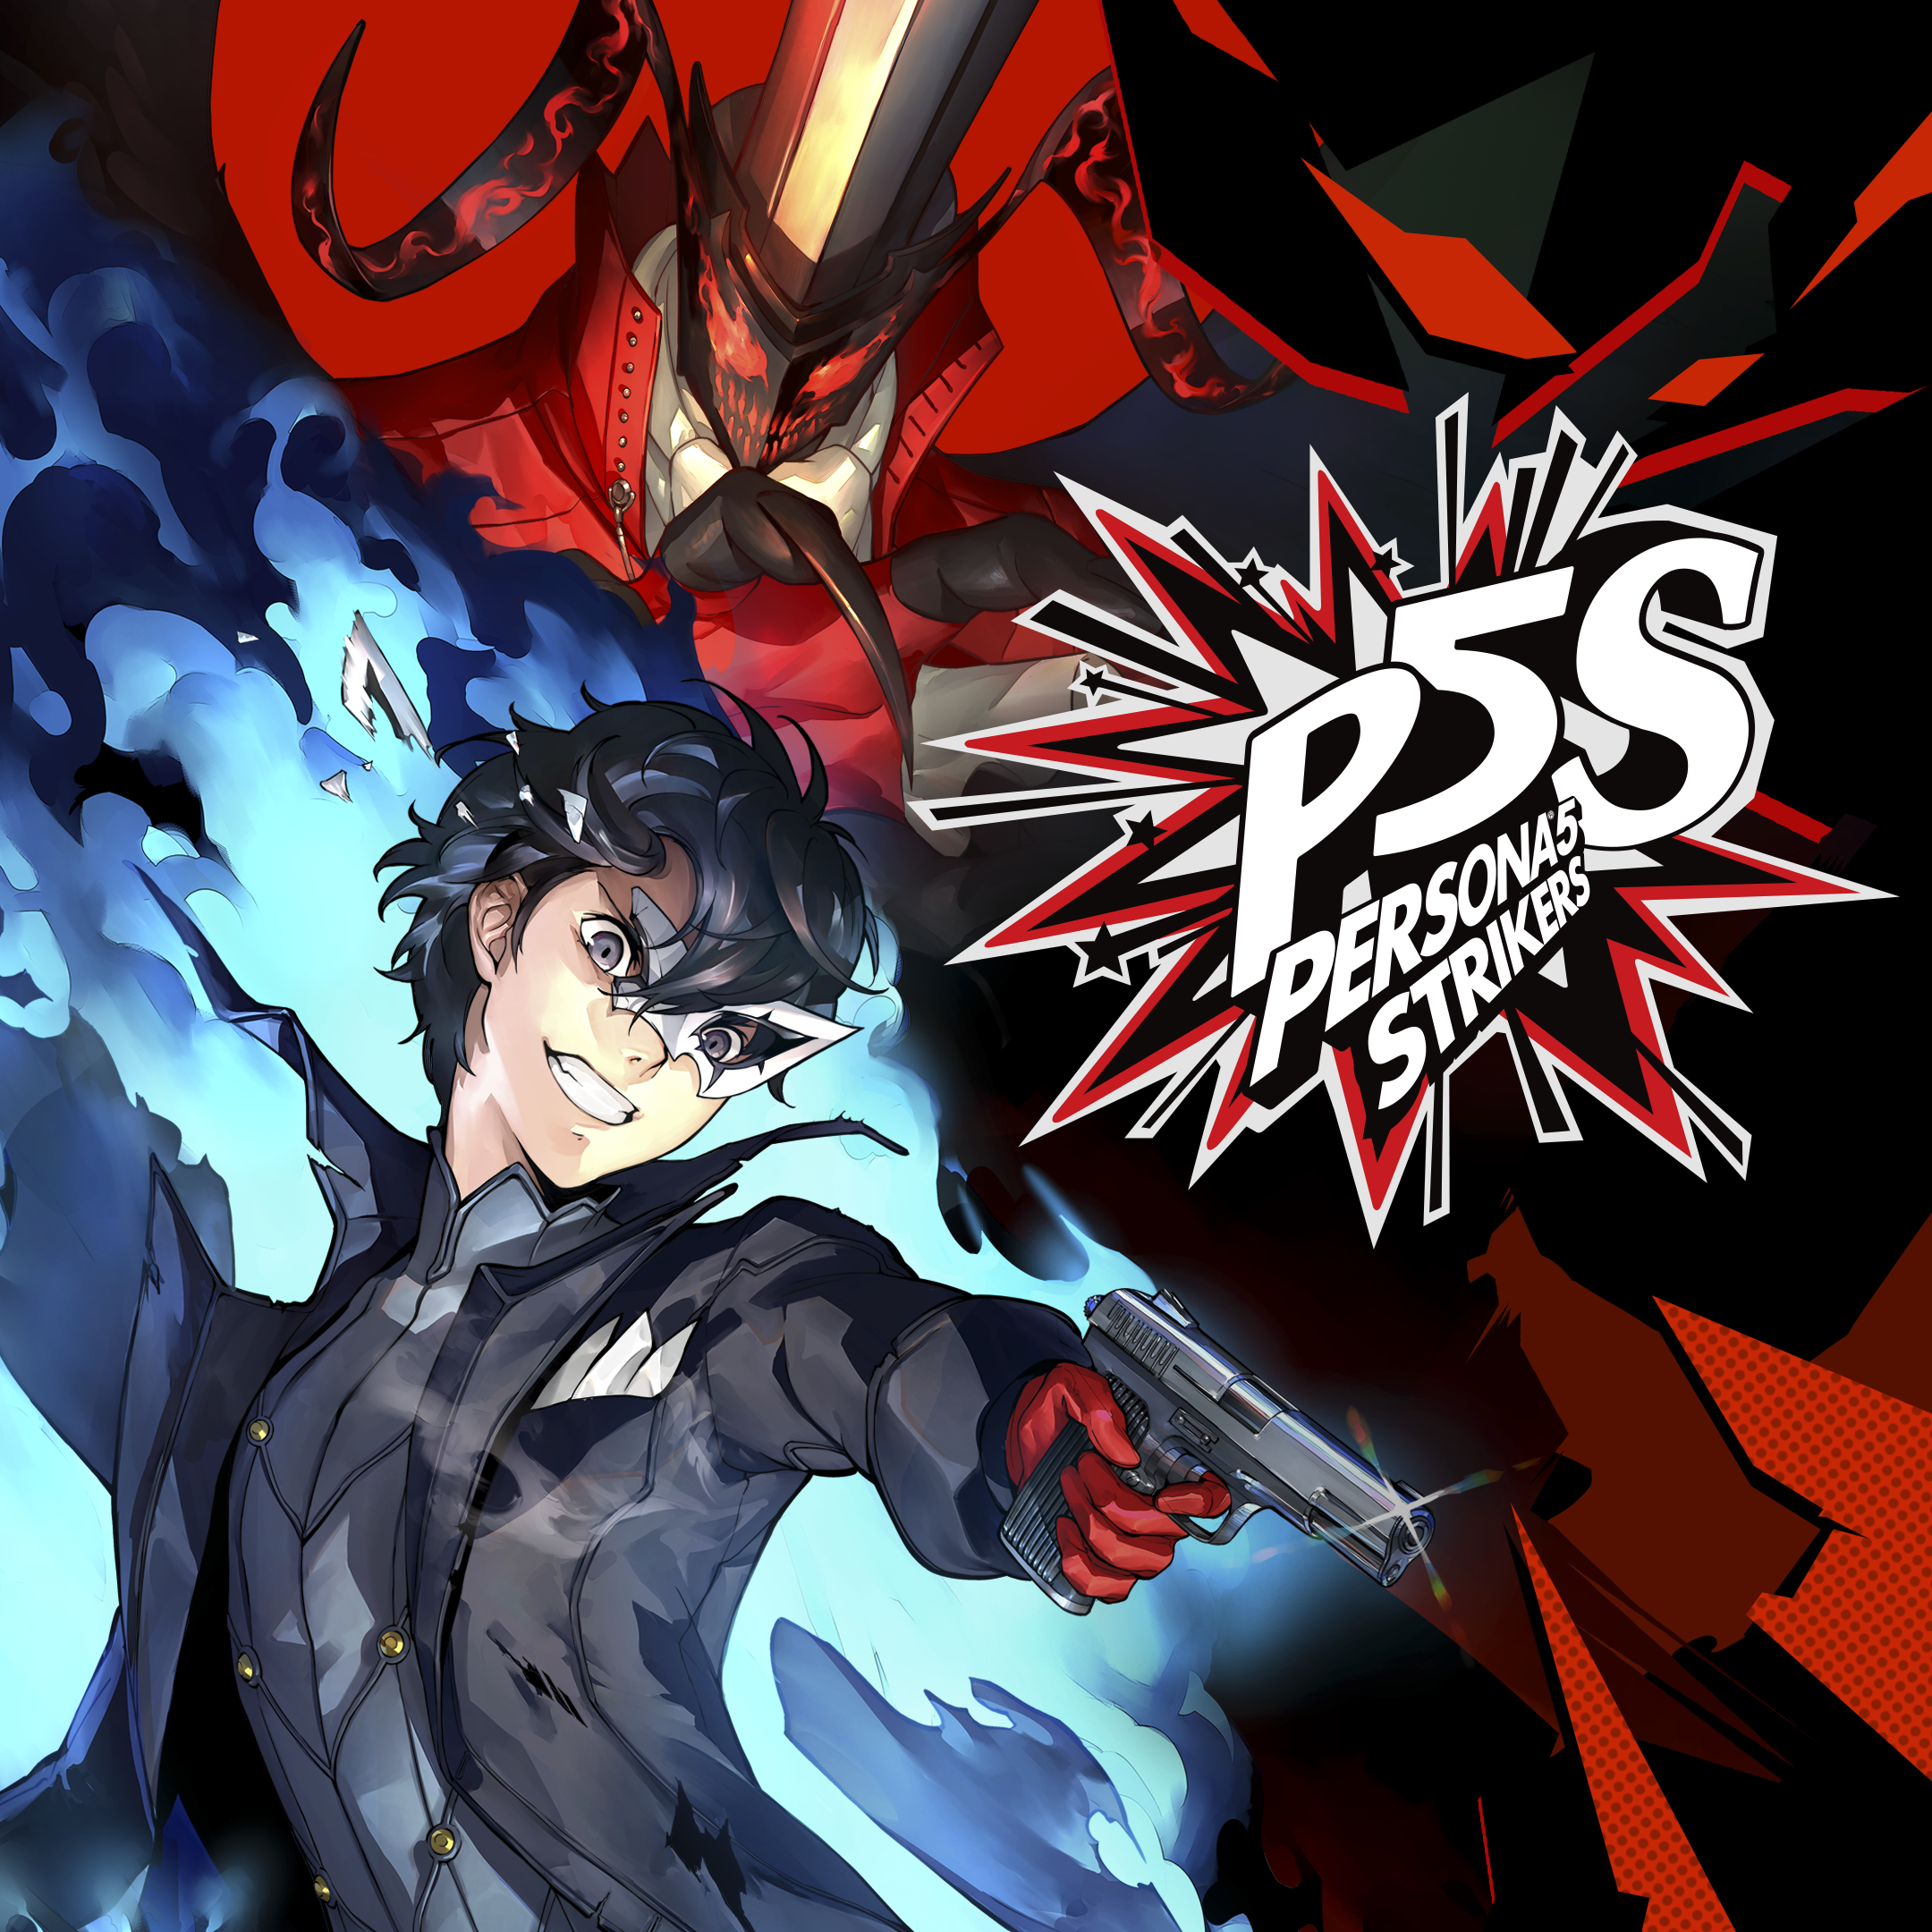 Persona 5 Strikers Digital Deluxe | Steam оффлайн